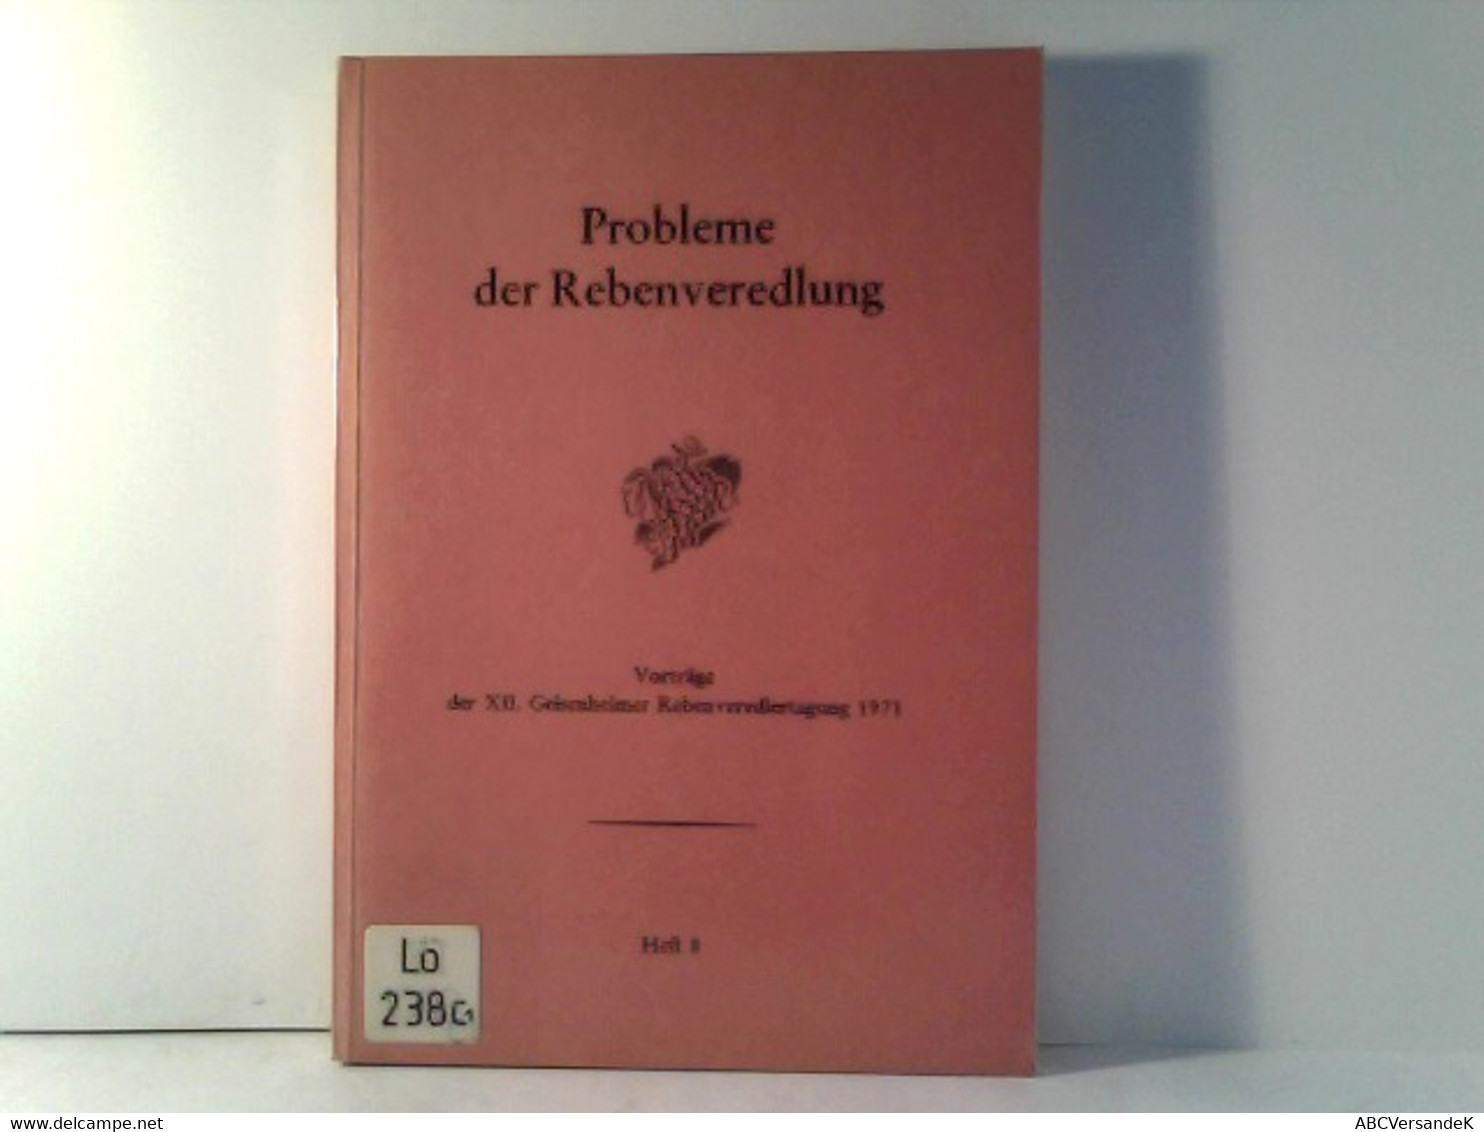 Probleme Der Rebenveredlung - Heft 8 - Vorträge Der XII. Geisenheimer Rebenveredlertagung 1971 - Natura